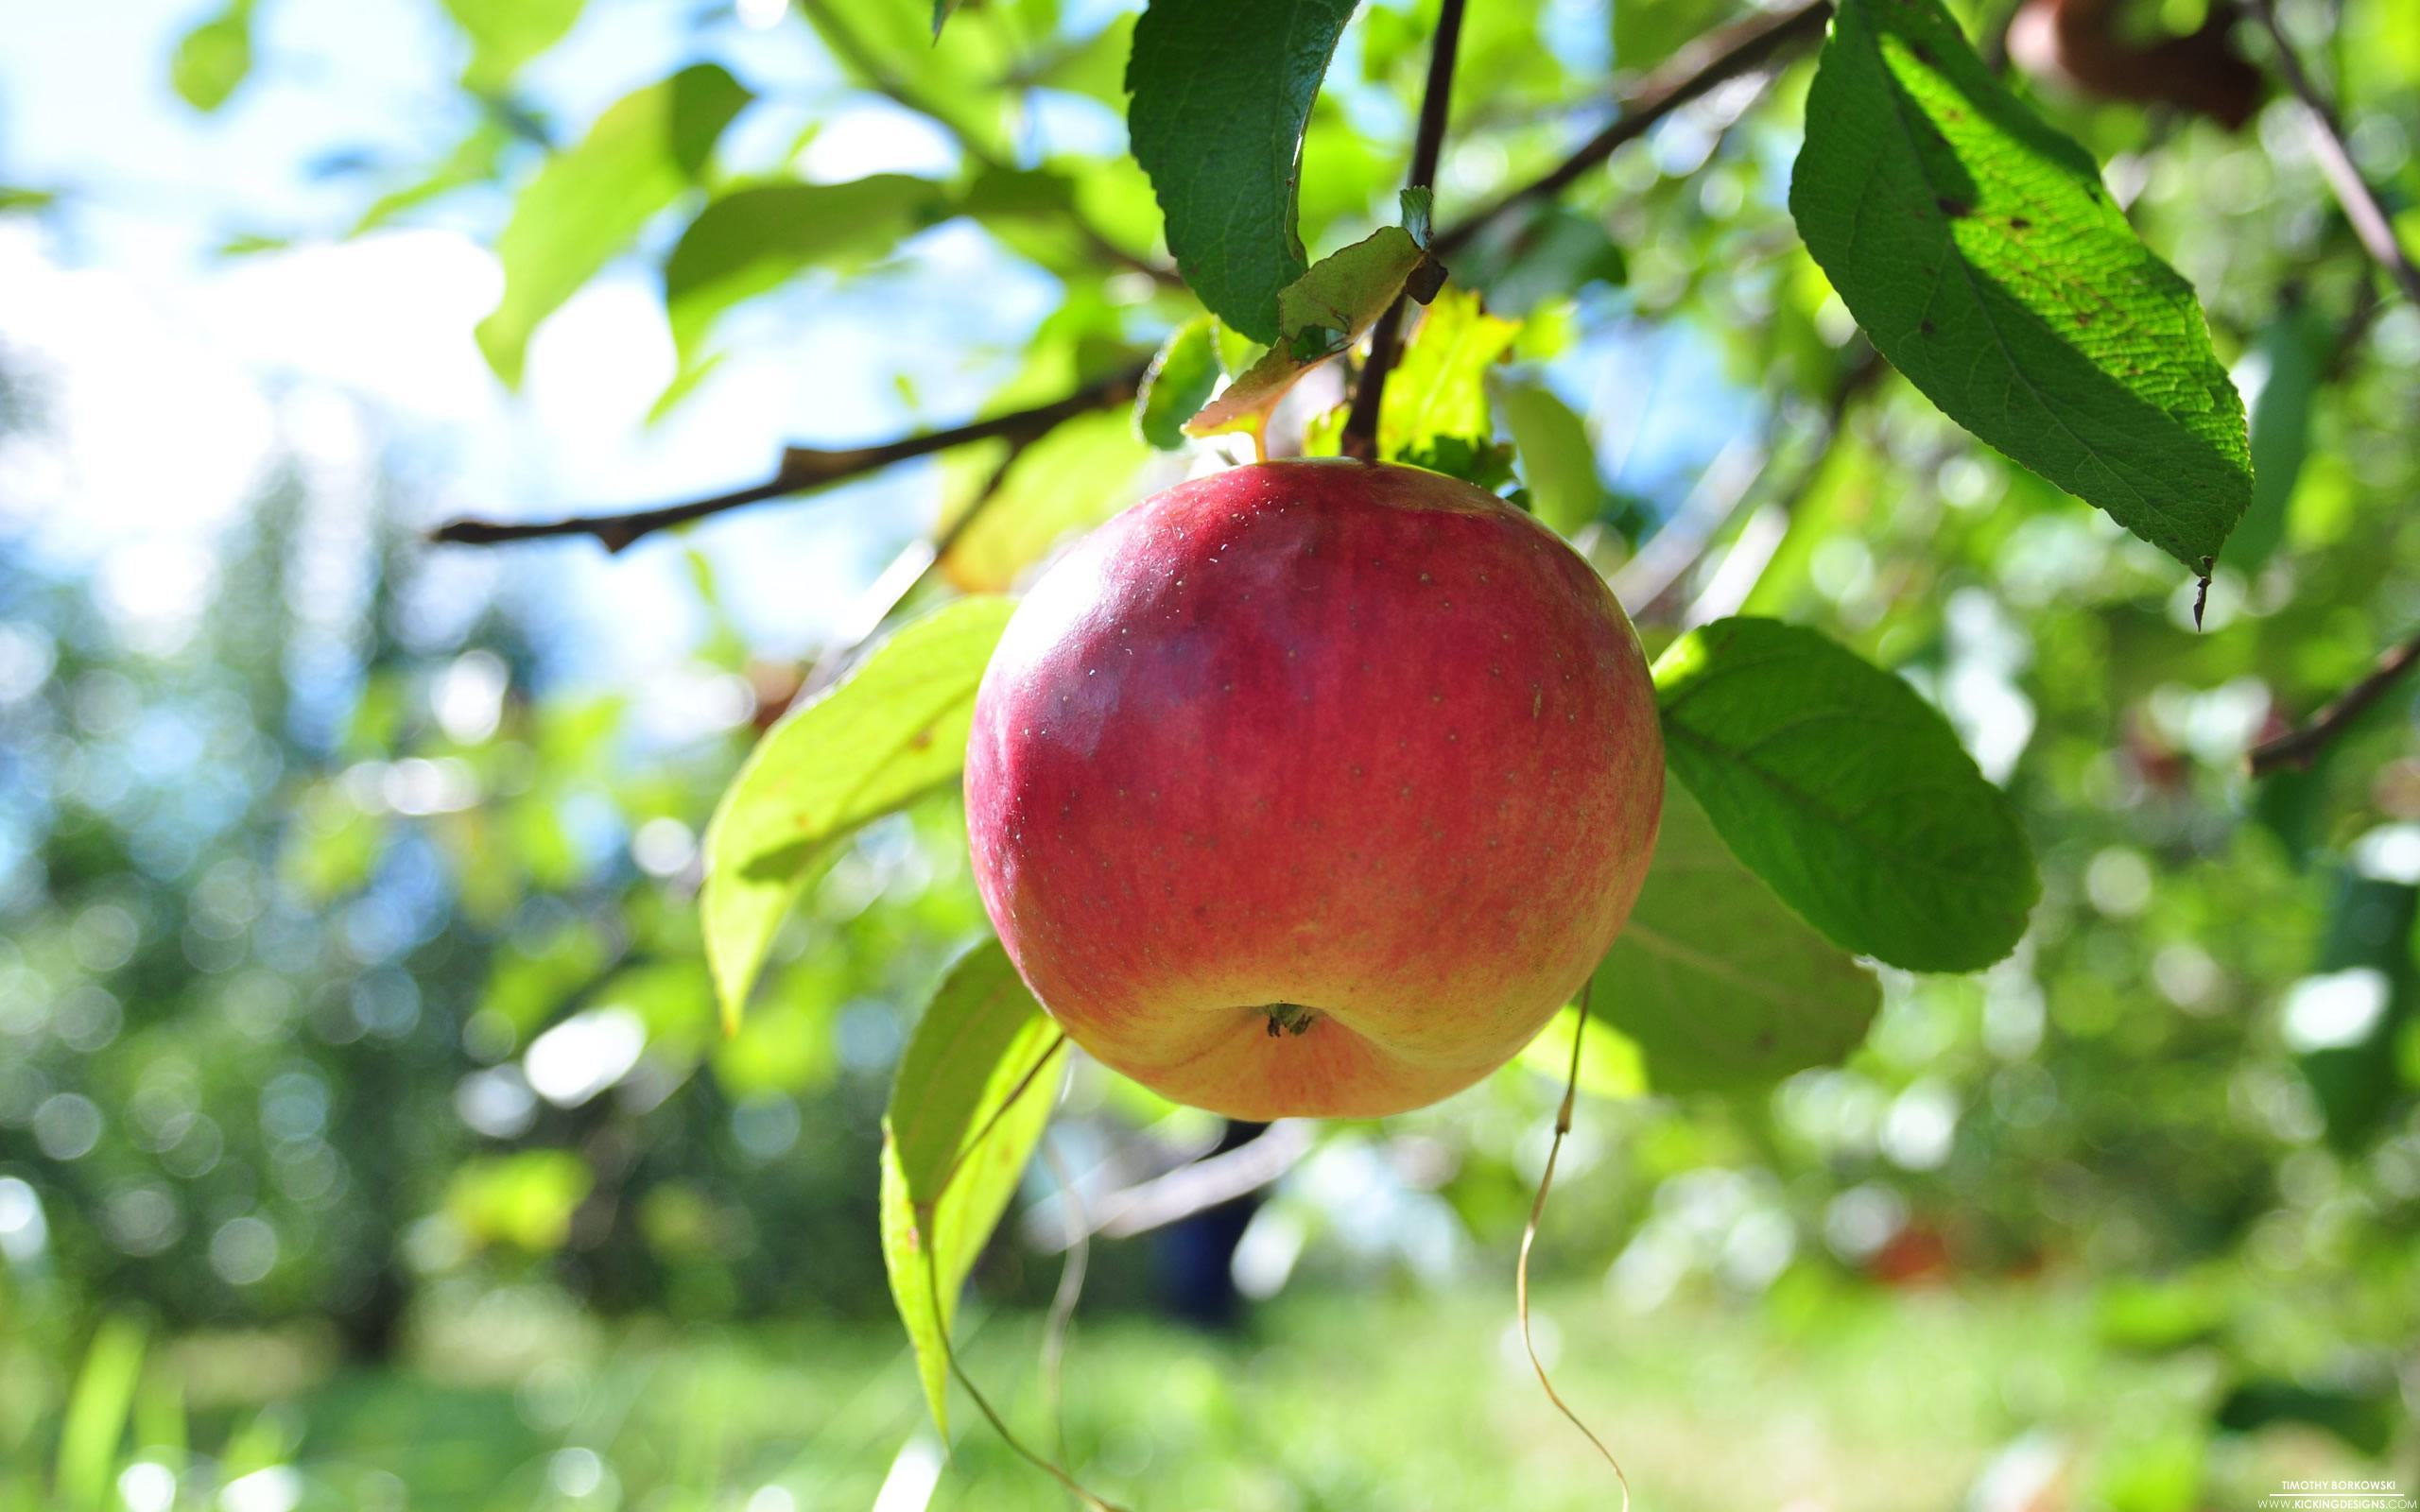 Hình ảnh quả táo trên cành cây rất đẹp